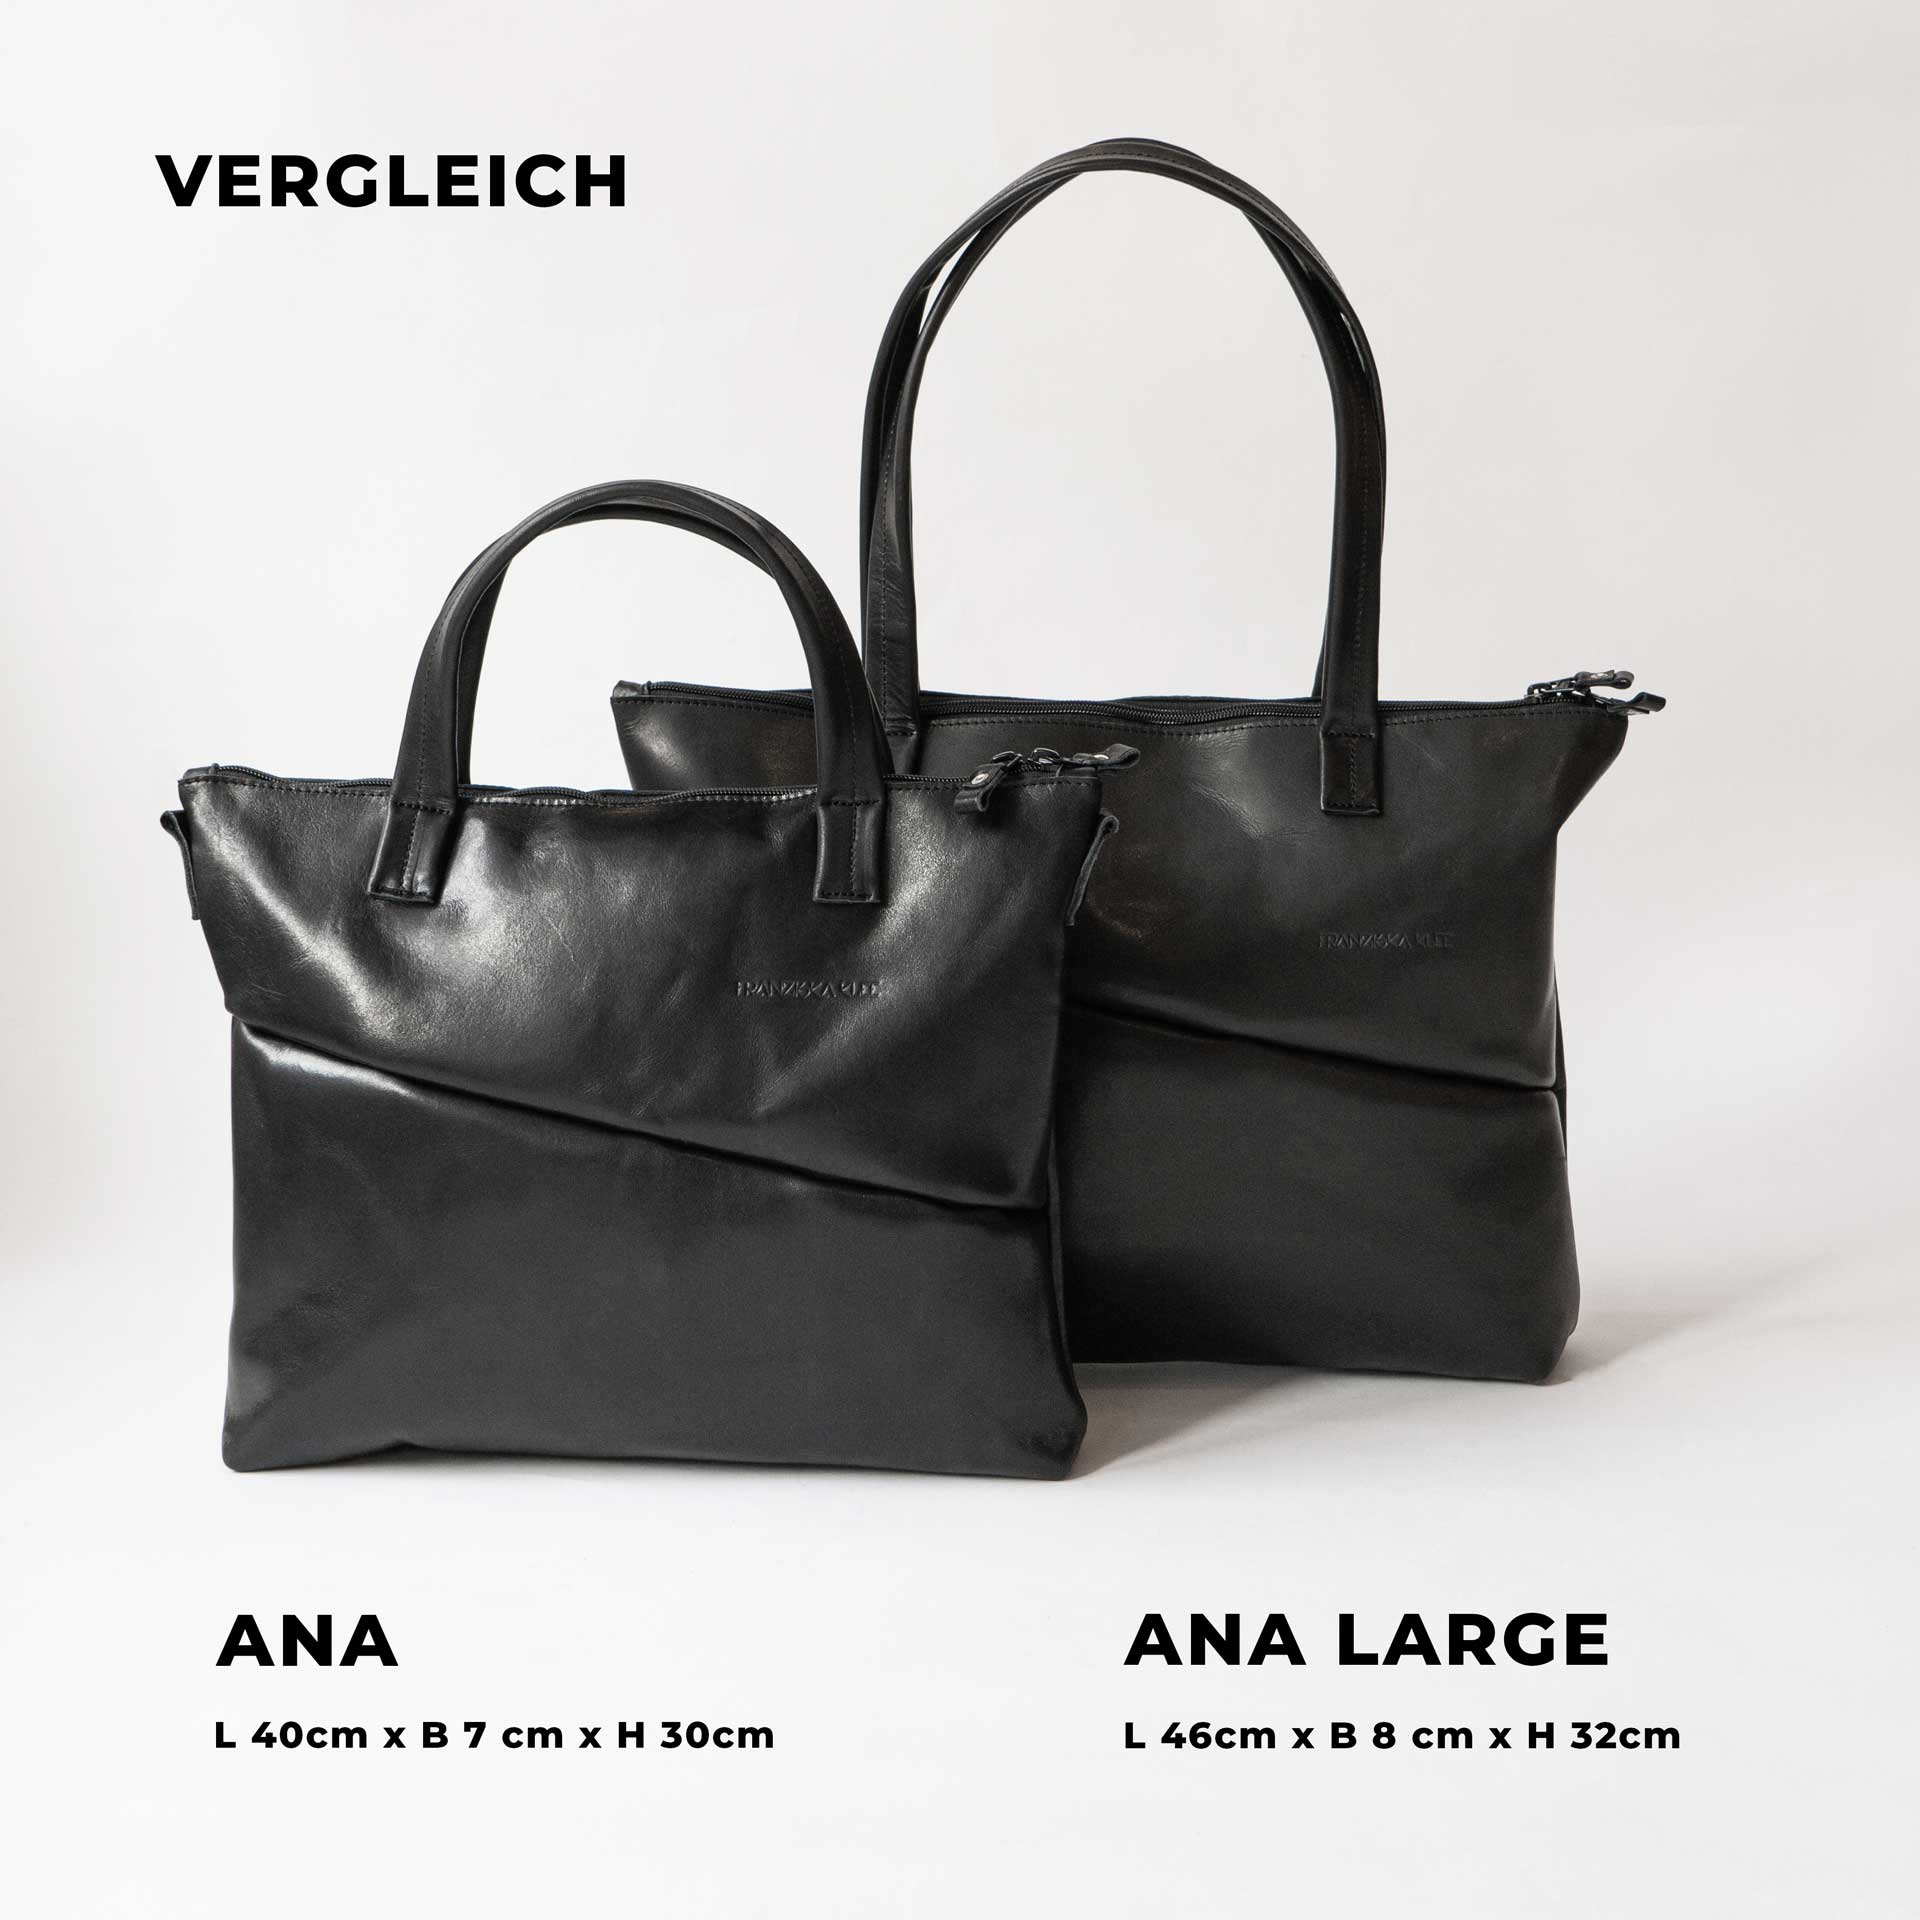 Unser Taschenmodell ANA gibt es in zwei Größen.